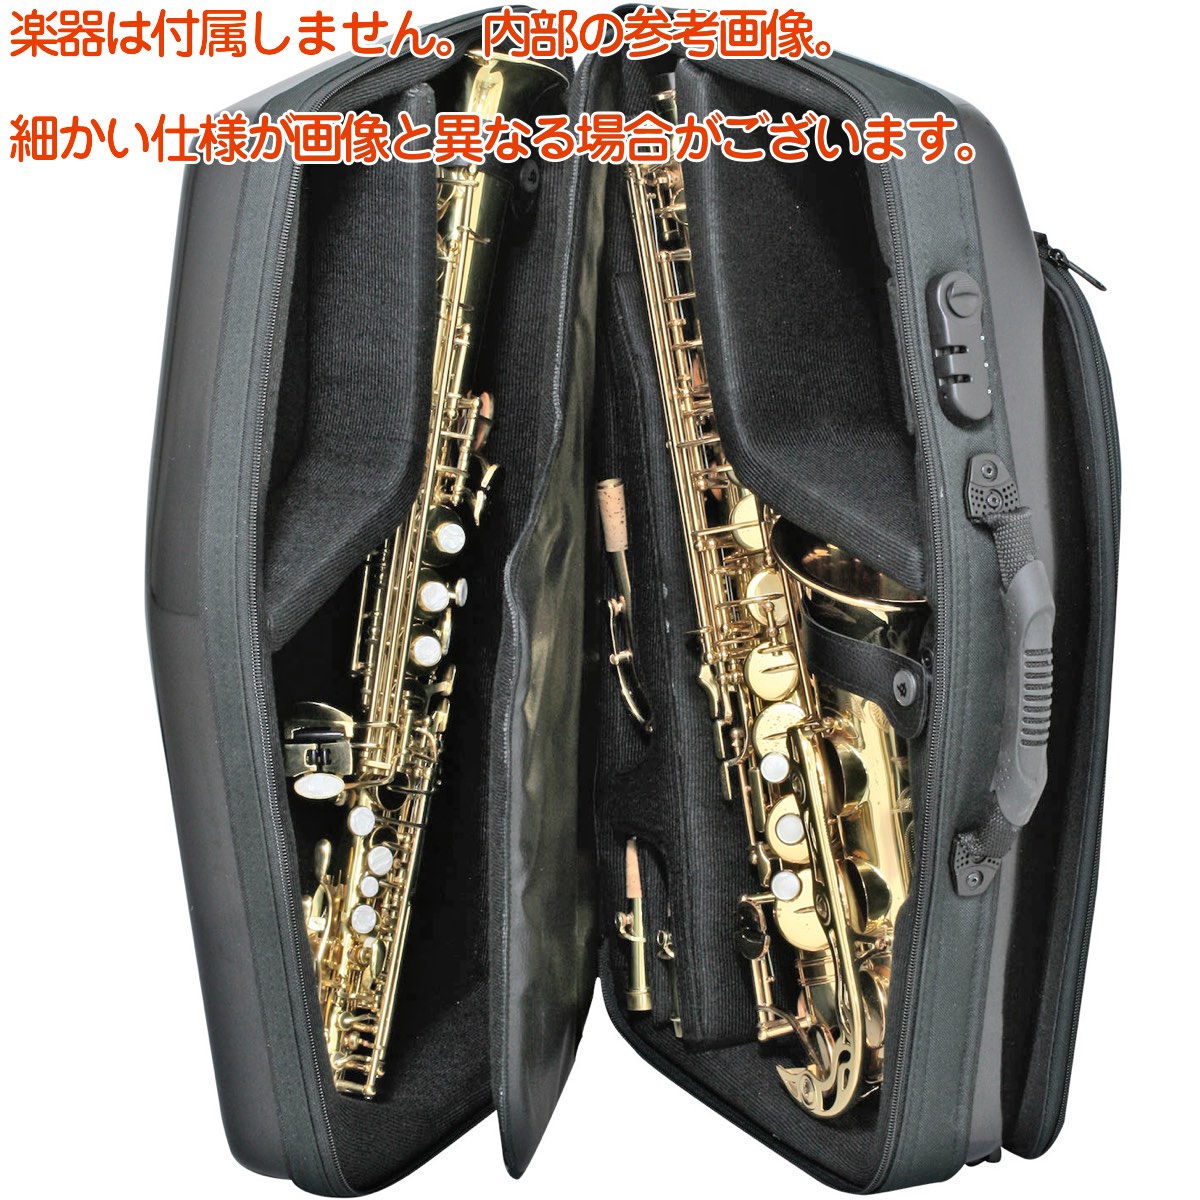 最大69%OFFクーポン bags バッグス EFTS M-BLK テナーサックスケース メタリック ブラック 黒色 ハードケース リュック  EVOLUTION tenor saxophone case 北海道 沖縄 離島不可